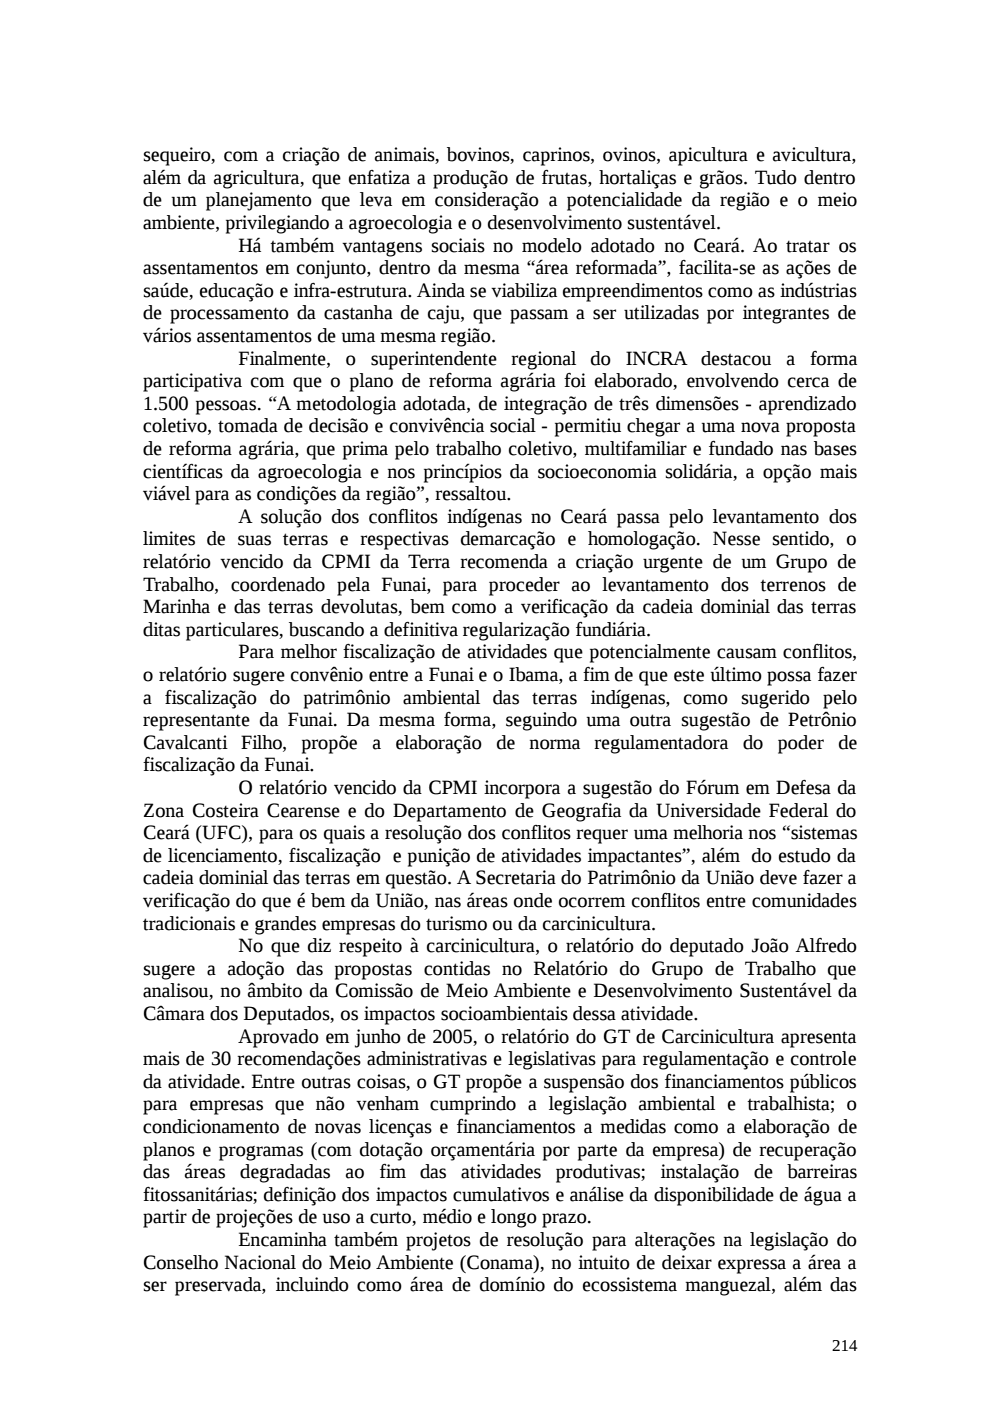 Page 214 from Relatório final da comissão